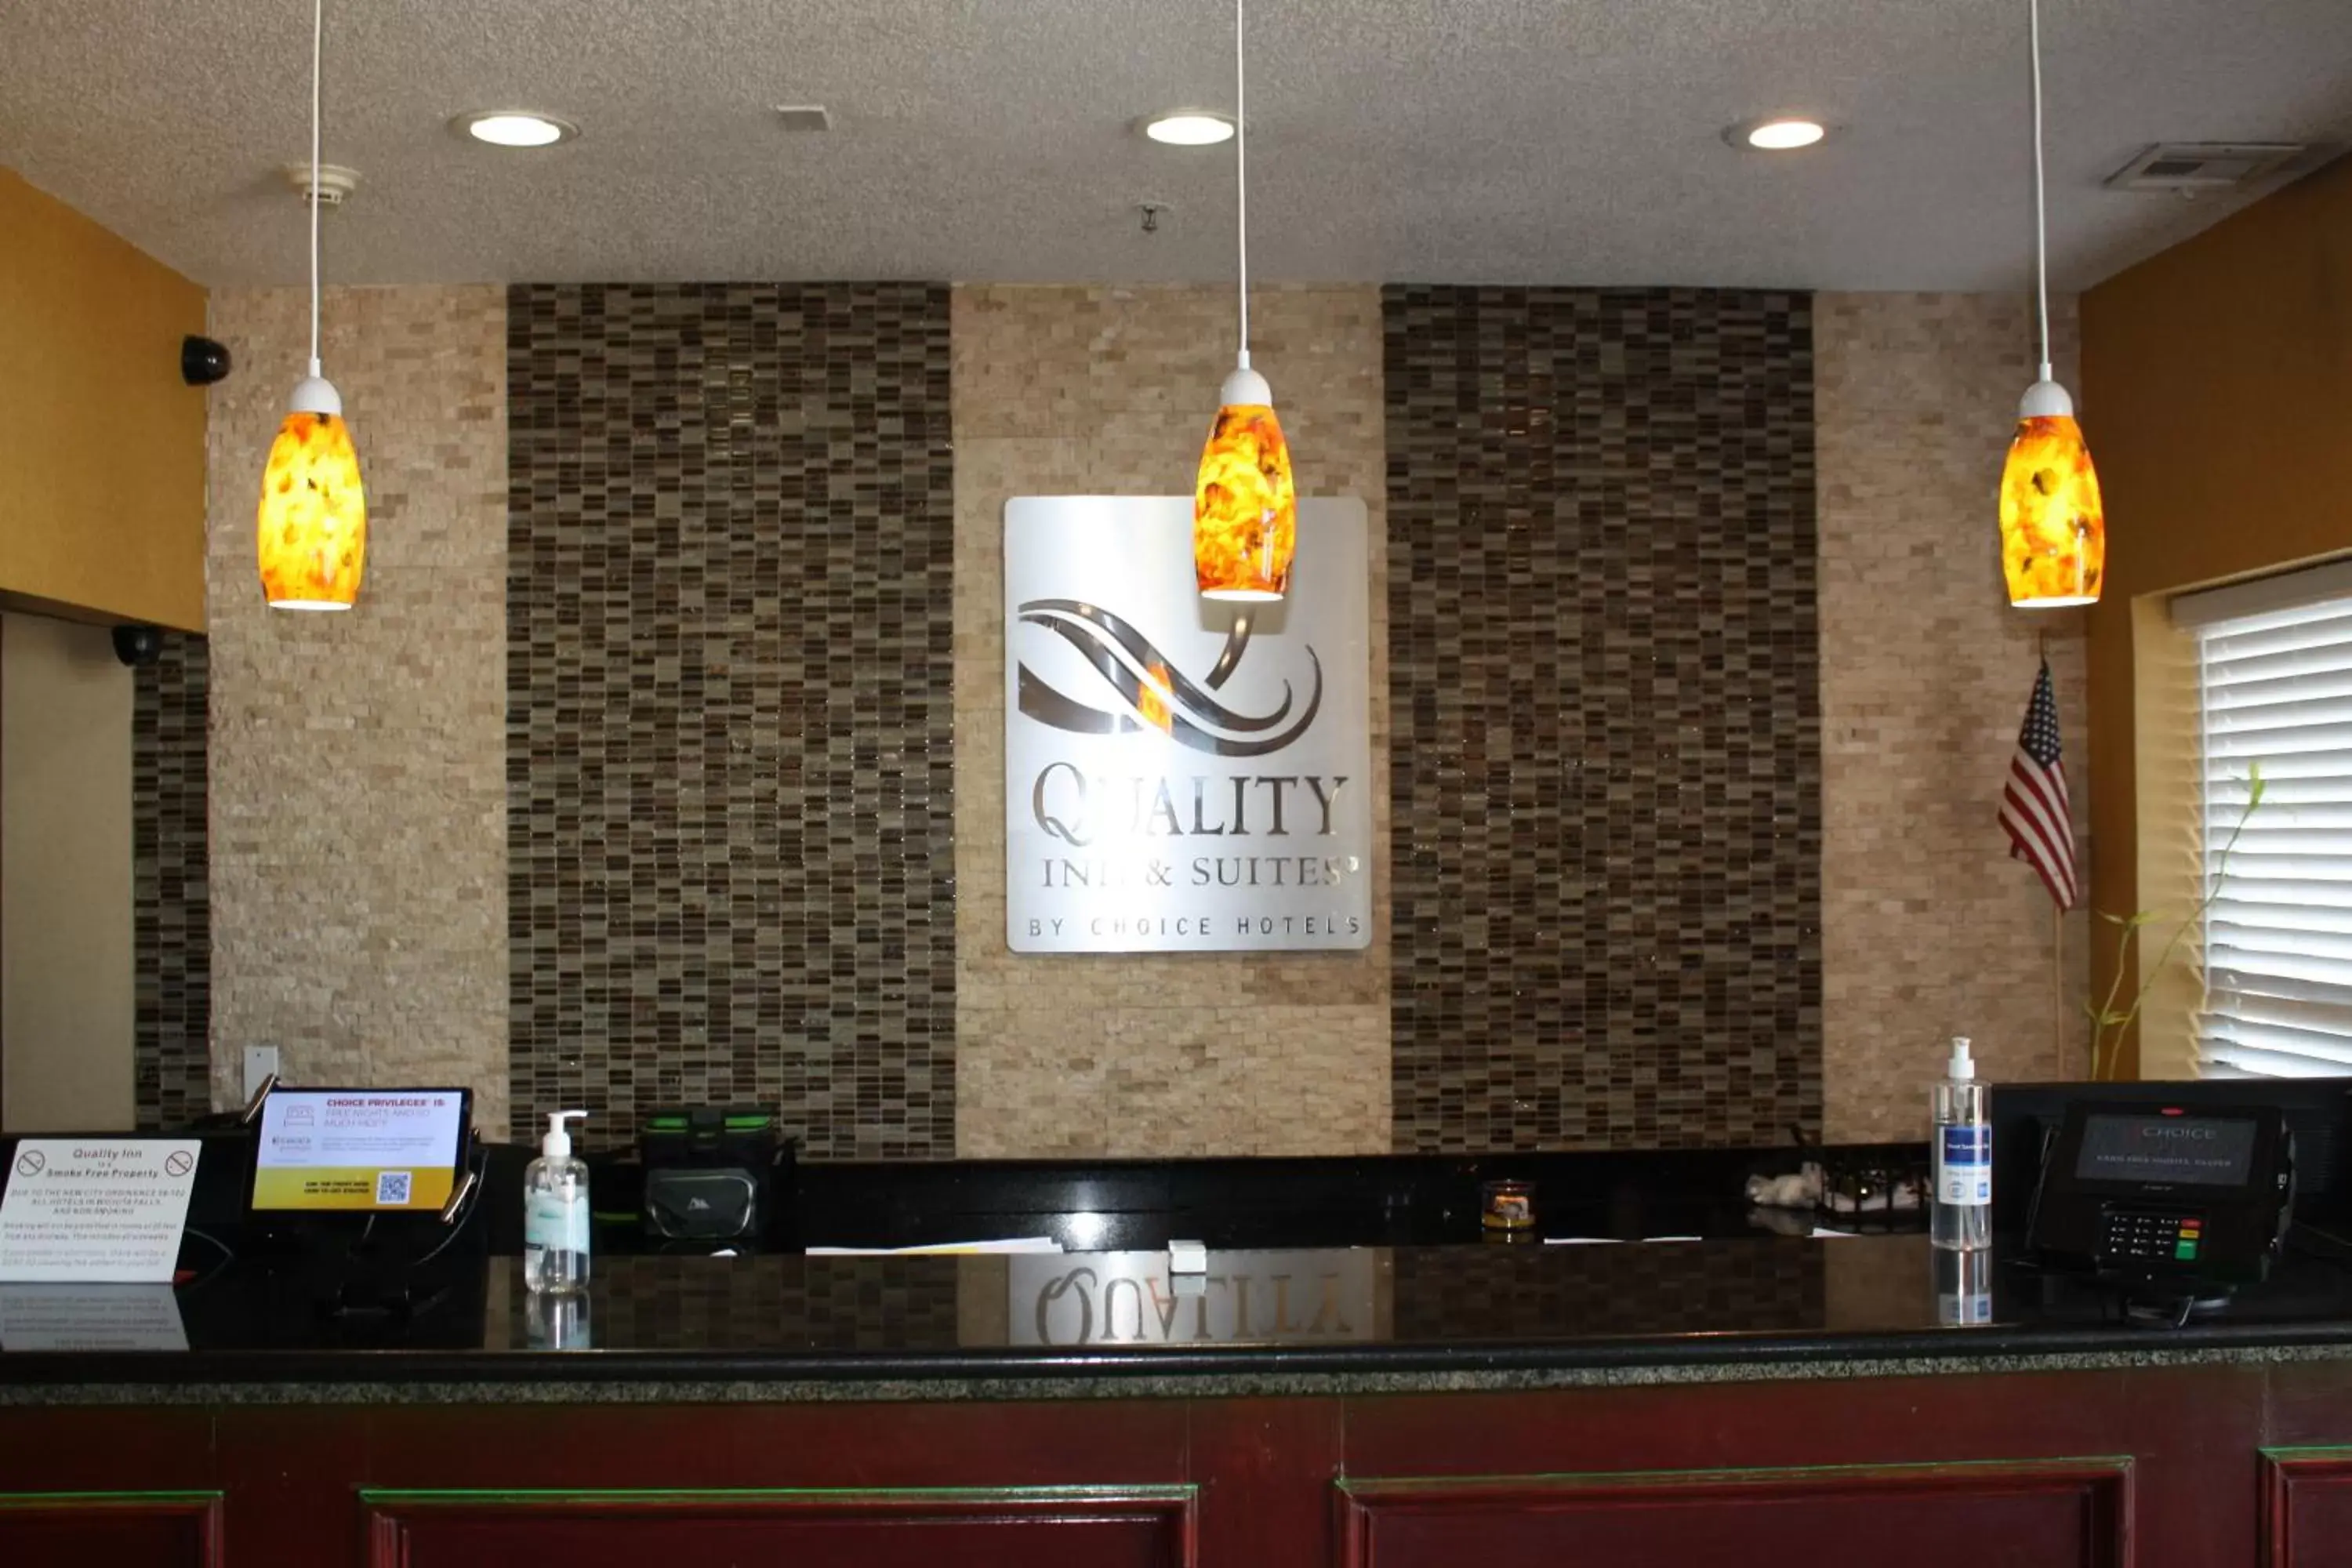 Lobby or reception, Lobby/Reception in Quality Inn & Suites Wichita Falls I-44